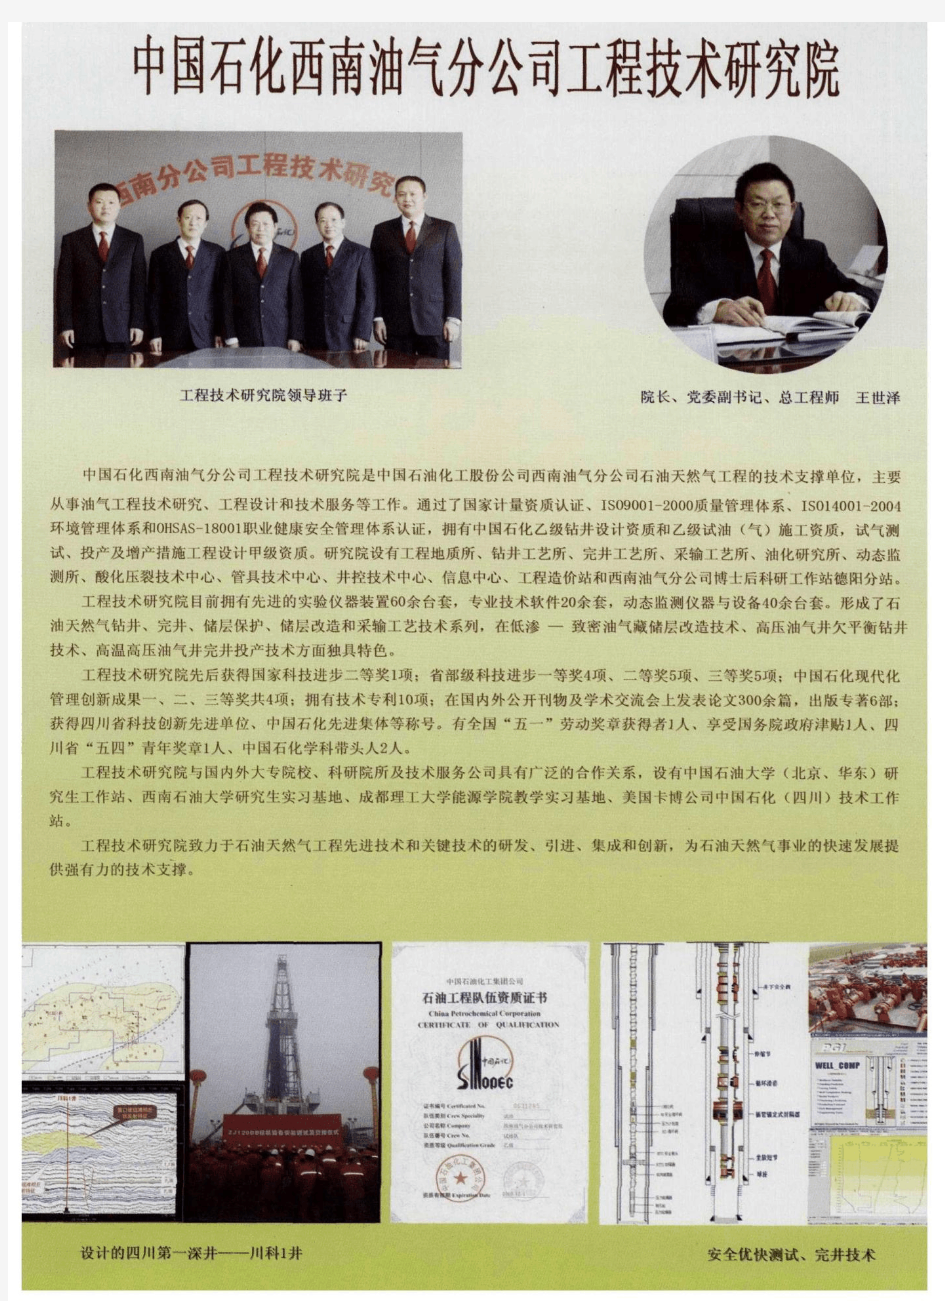 中国石化西南油气分公司工程技术研究院